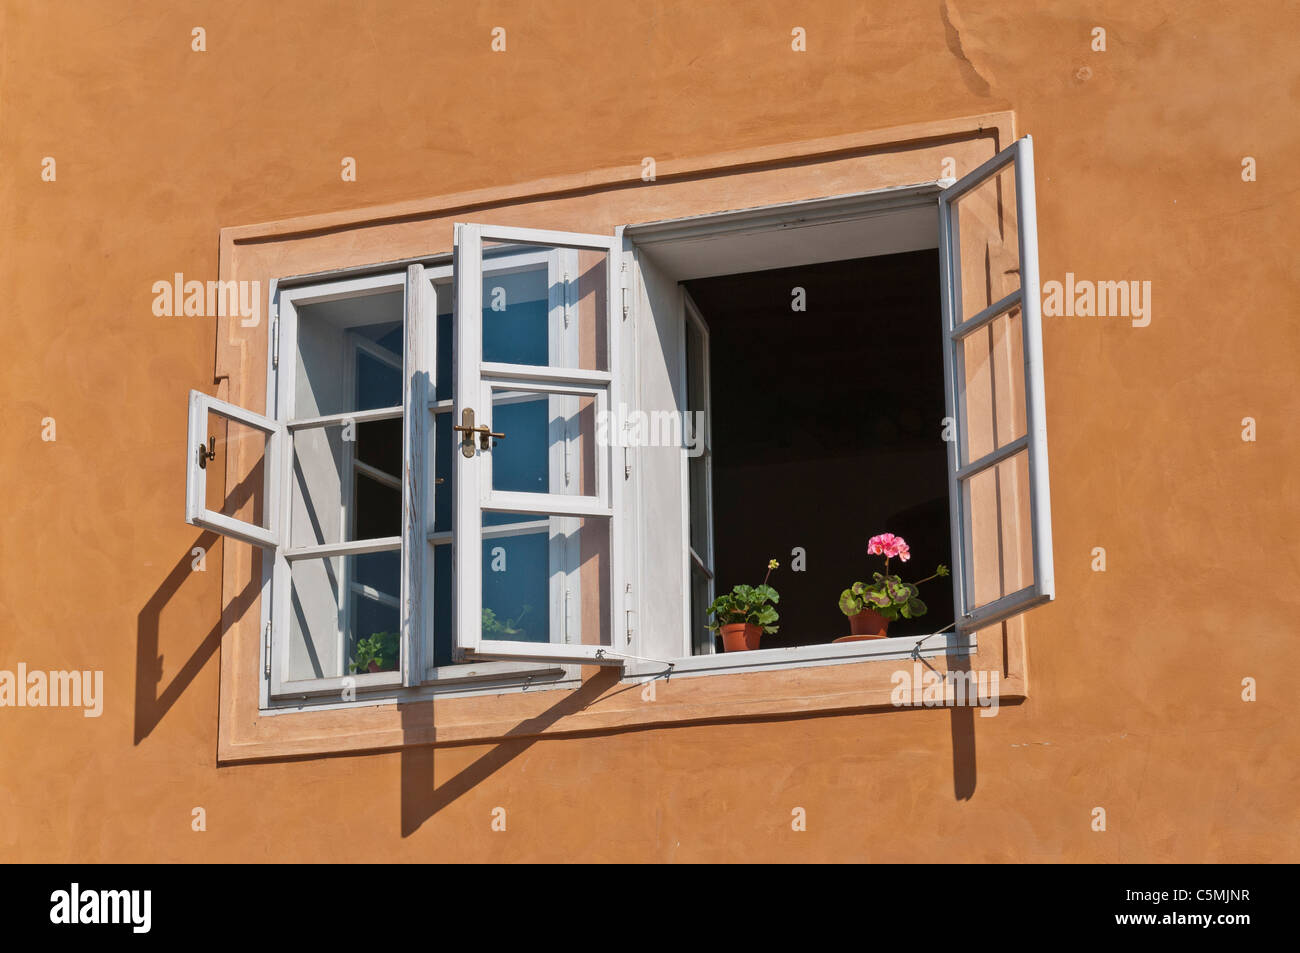 Cache-pot sur un rebord de fenêtre | Blumentopf suis Fensterbrett Banque D'Images